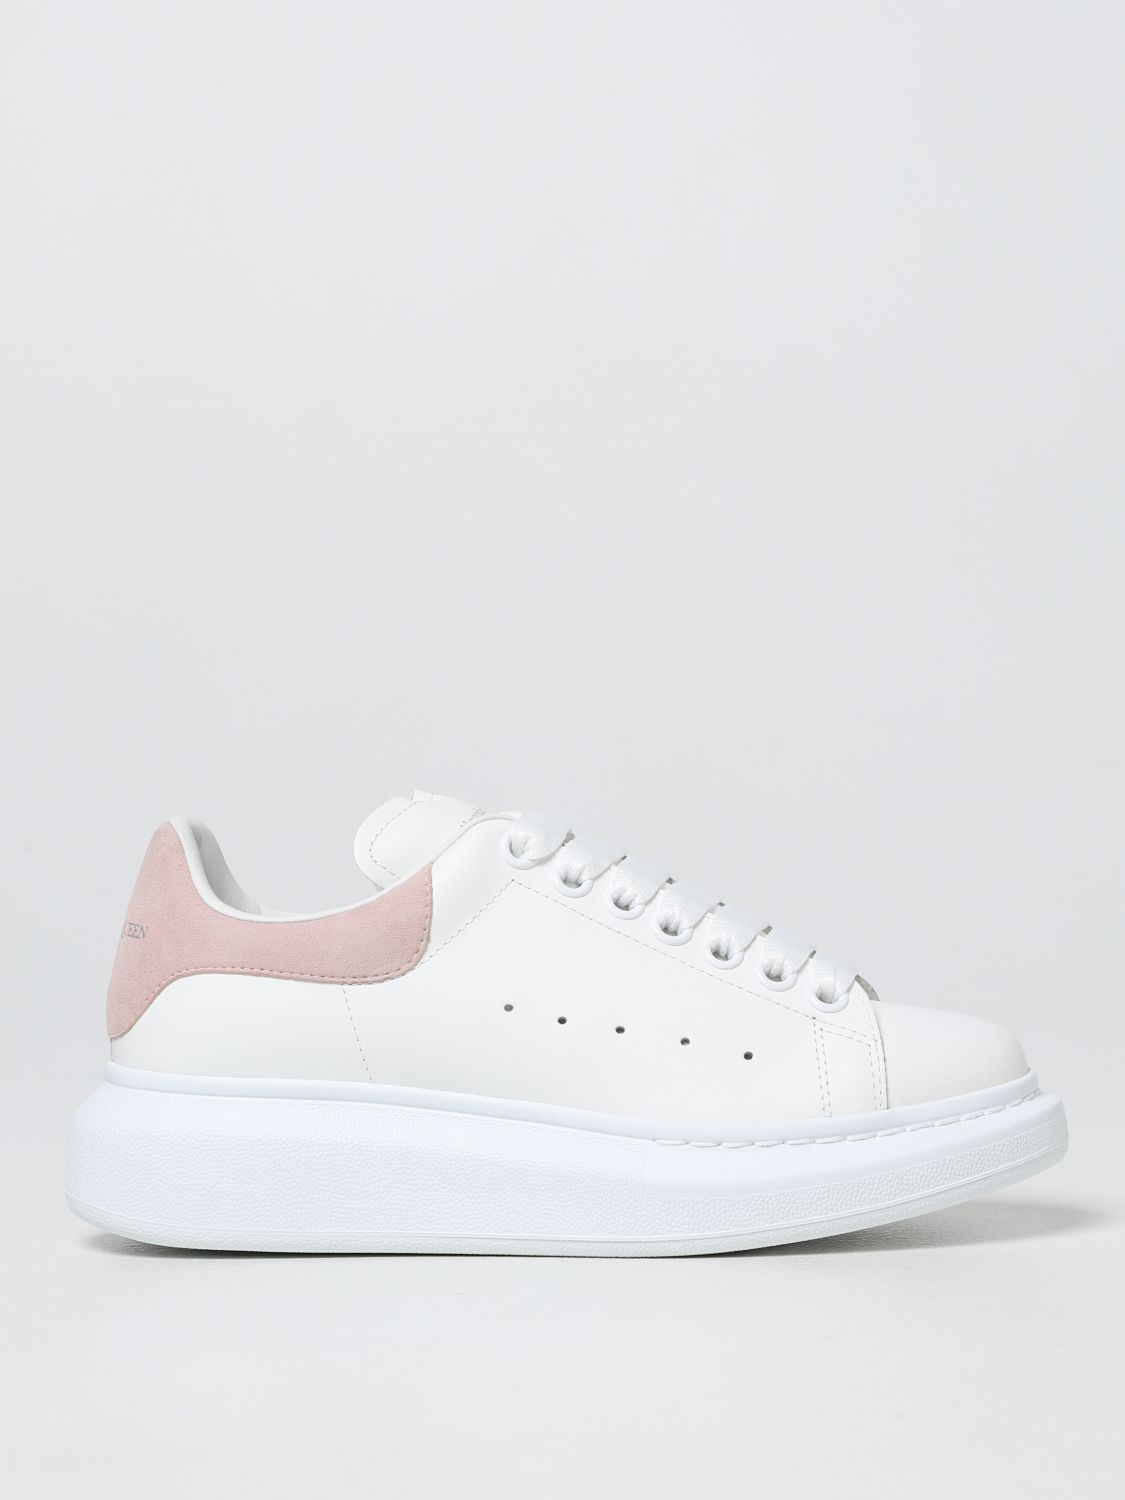 Alexander McQueen women's leather/mesh sneakers beige/pink